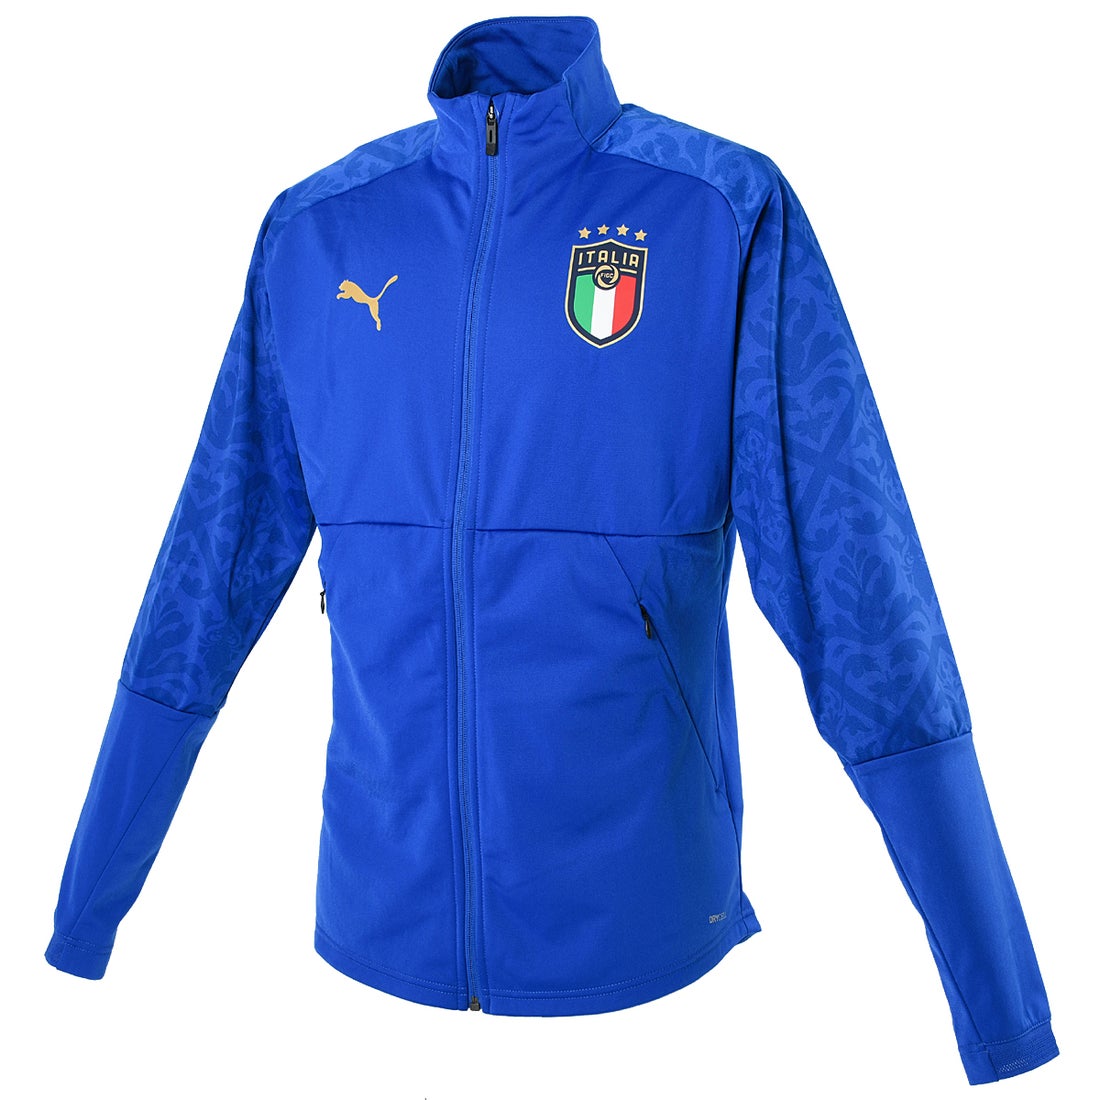 Puma イタリア代表 ホーム スタジアム ジャケット ブルー サッカーショップ Sws サッカーユニフォーム サッカー用品通販 フットボールパーク